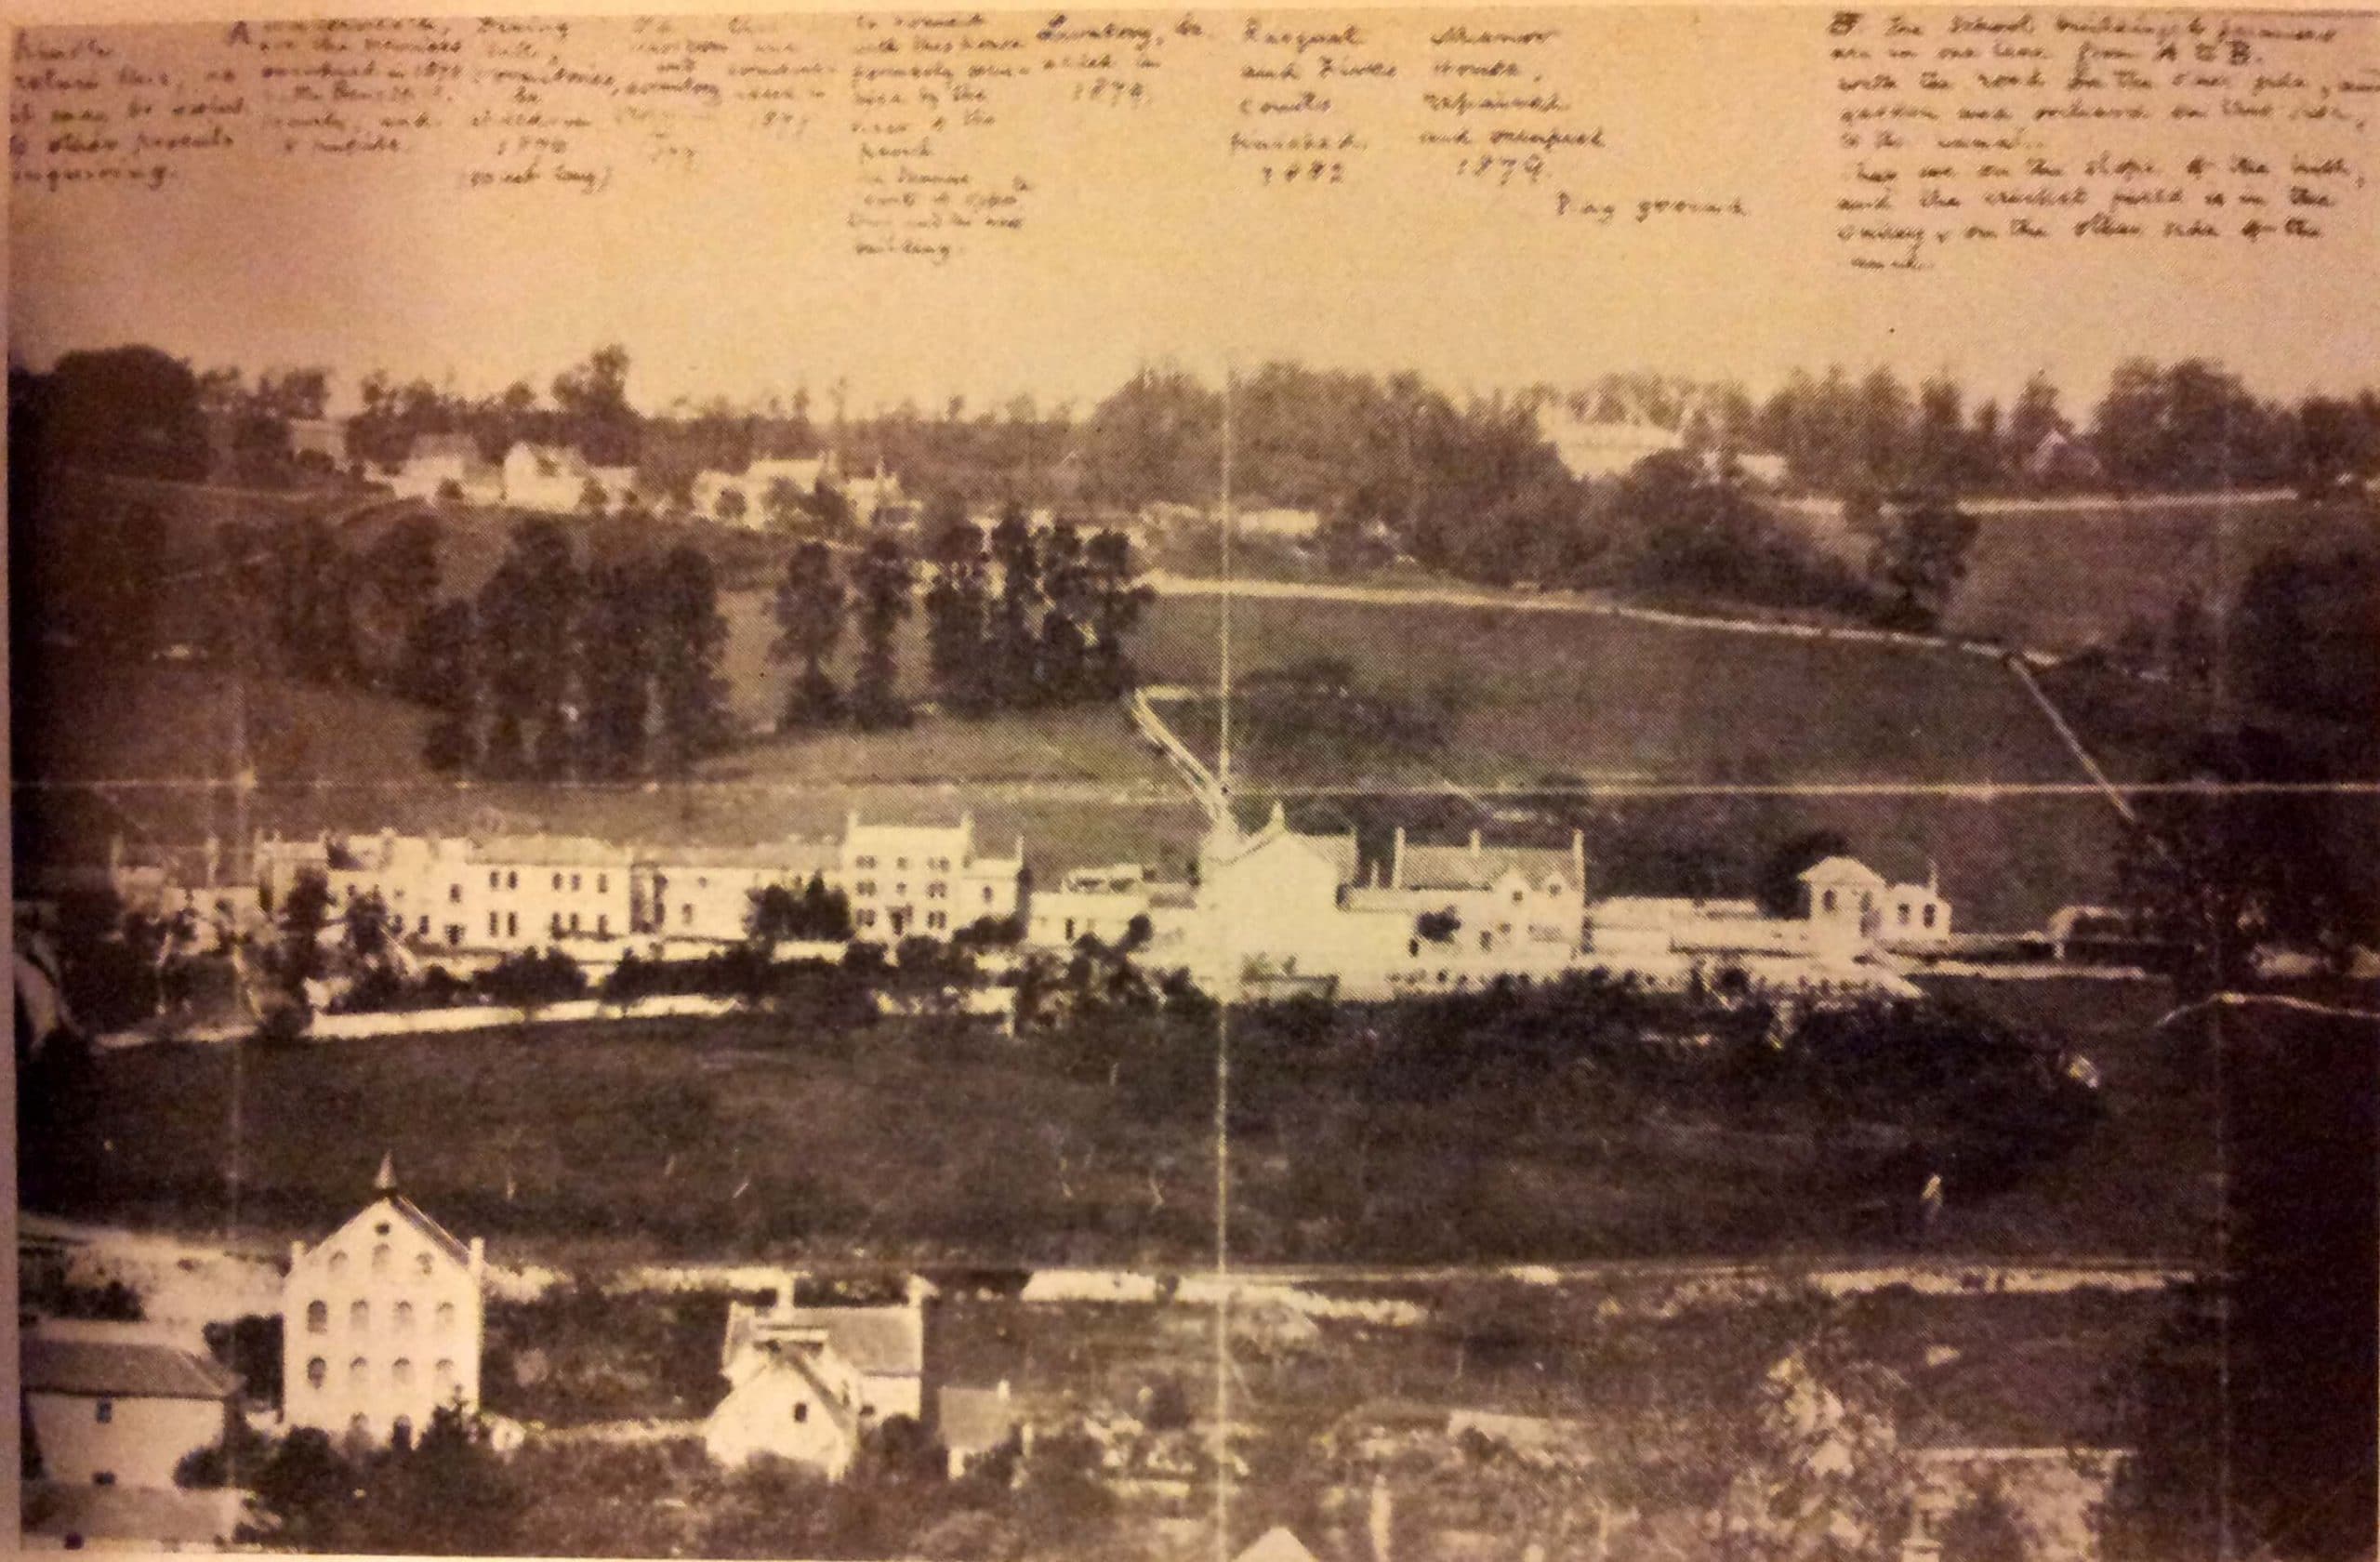 Monkton Combe School, 1883